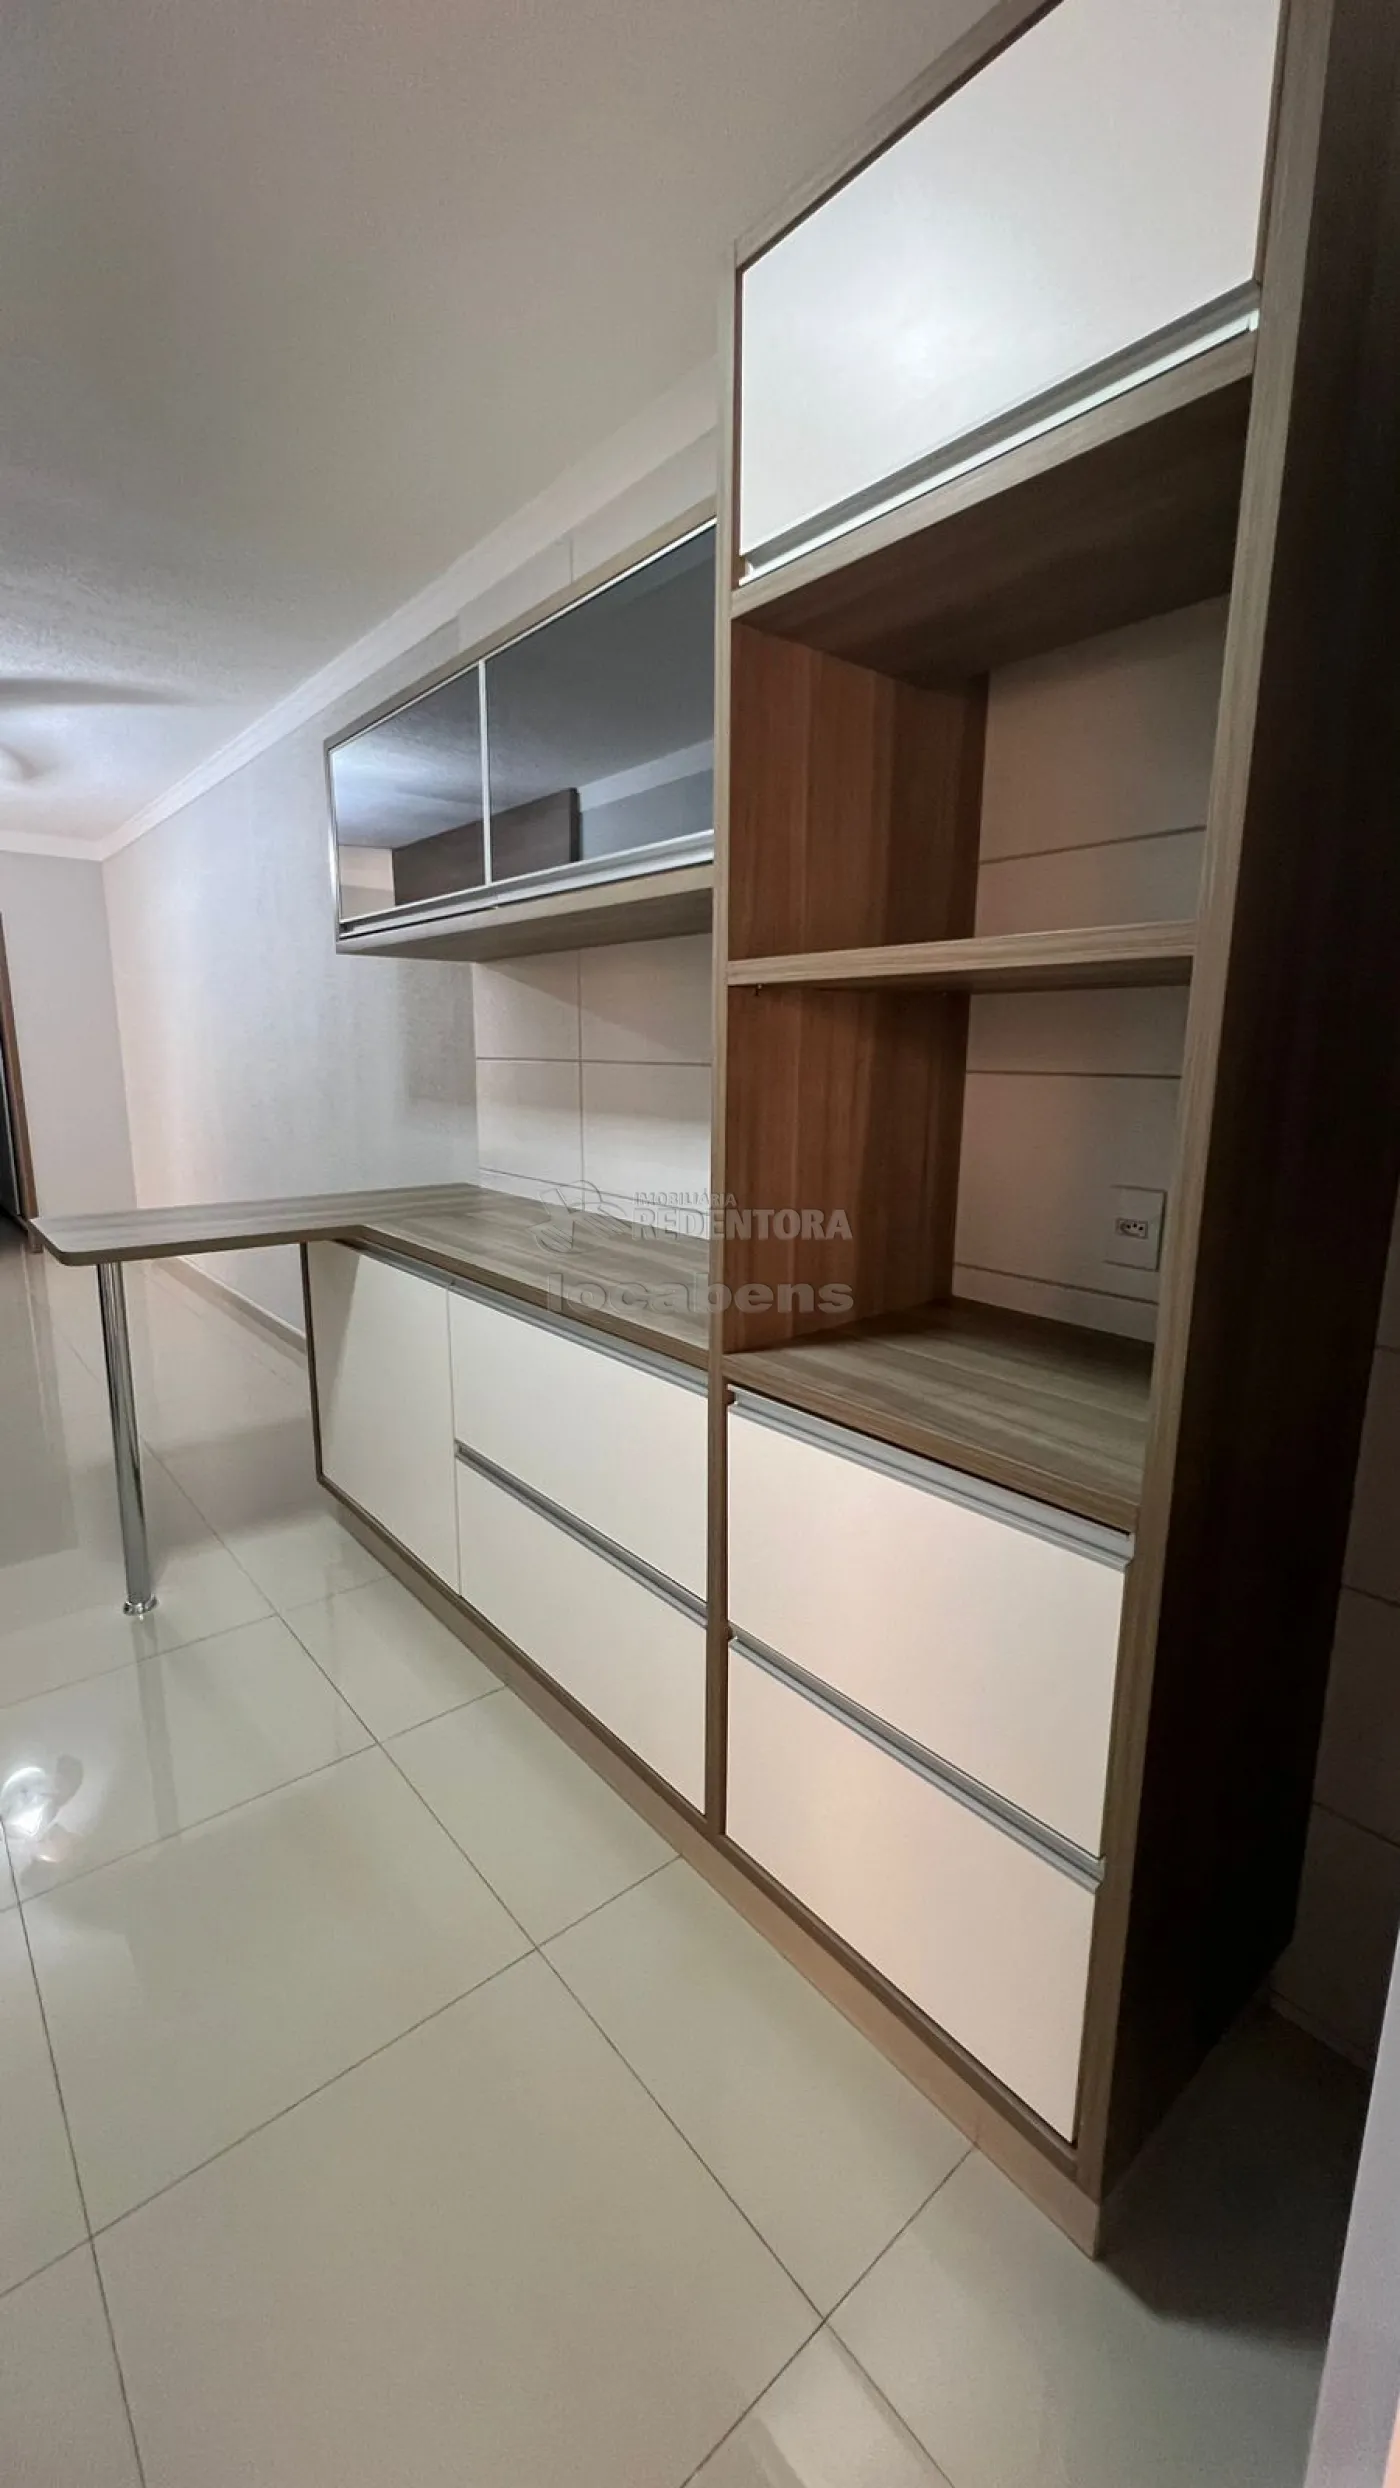 Comprar Casa / Condomínio em São José do Rio Preto apenas R$ 405.000,00 - Foto 3